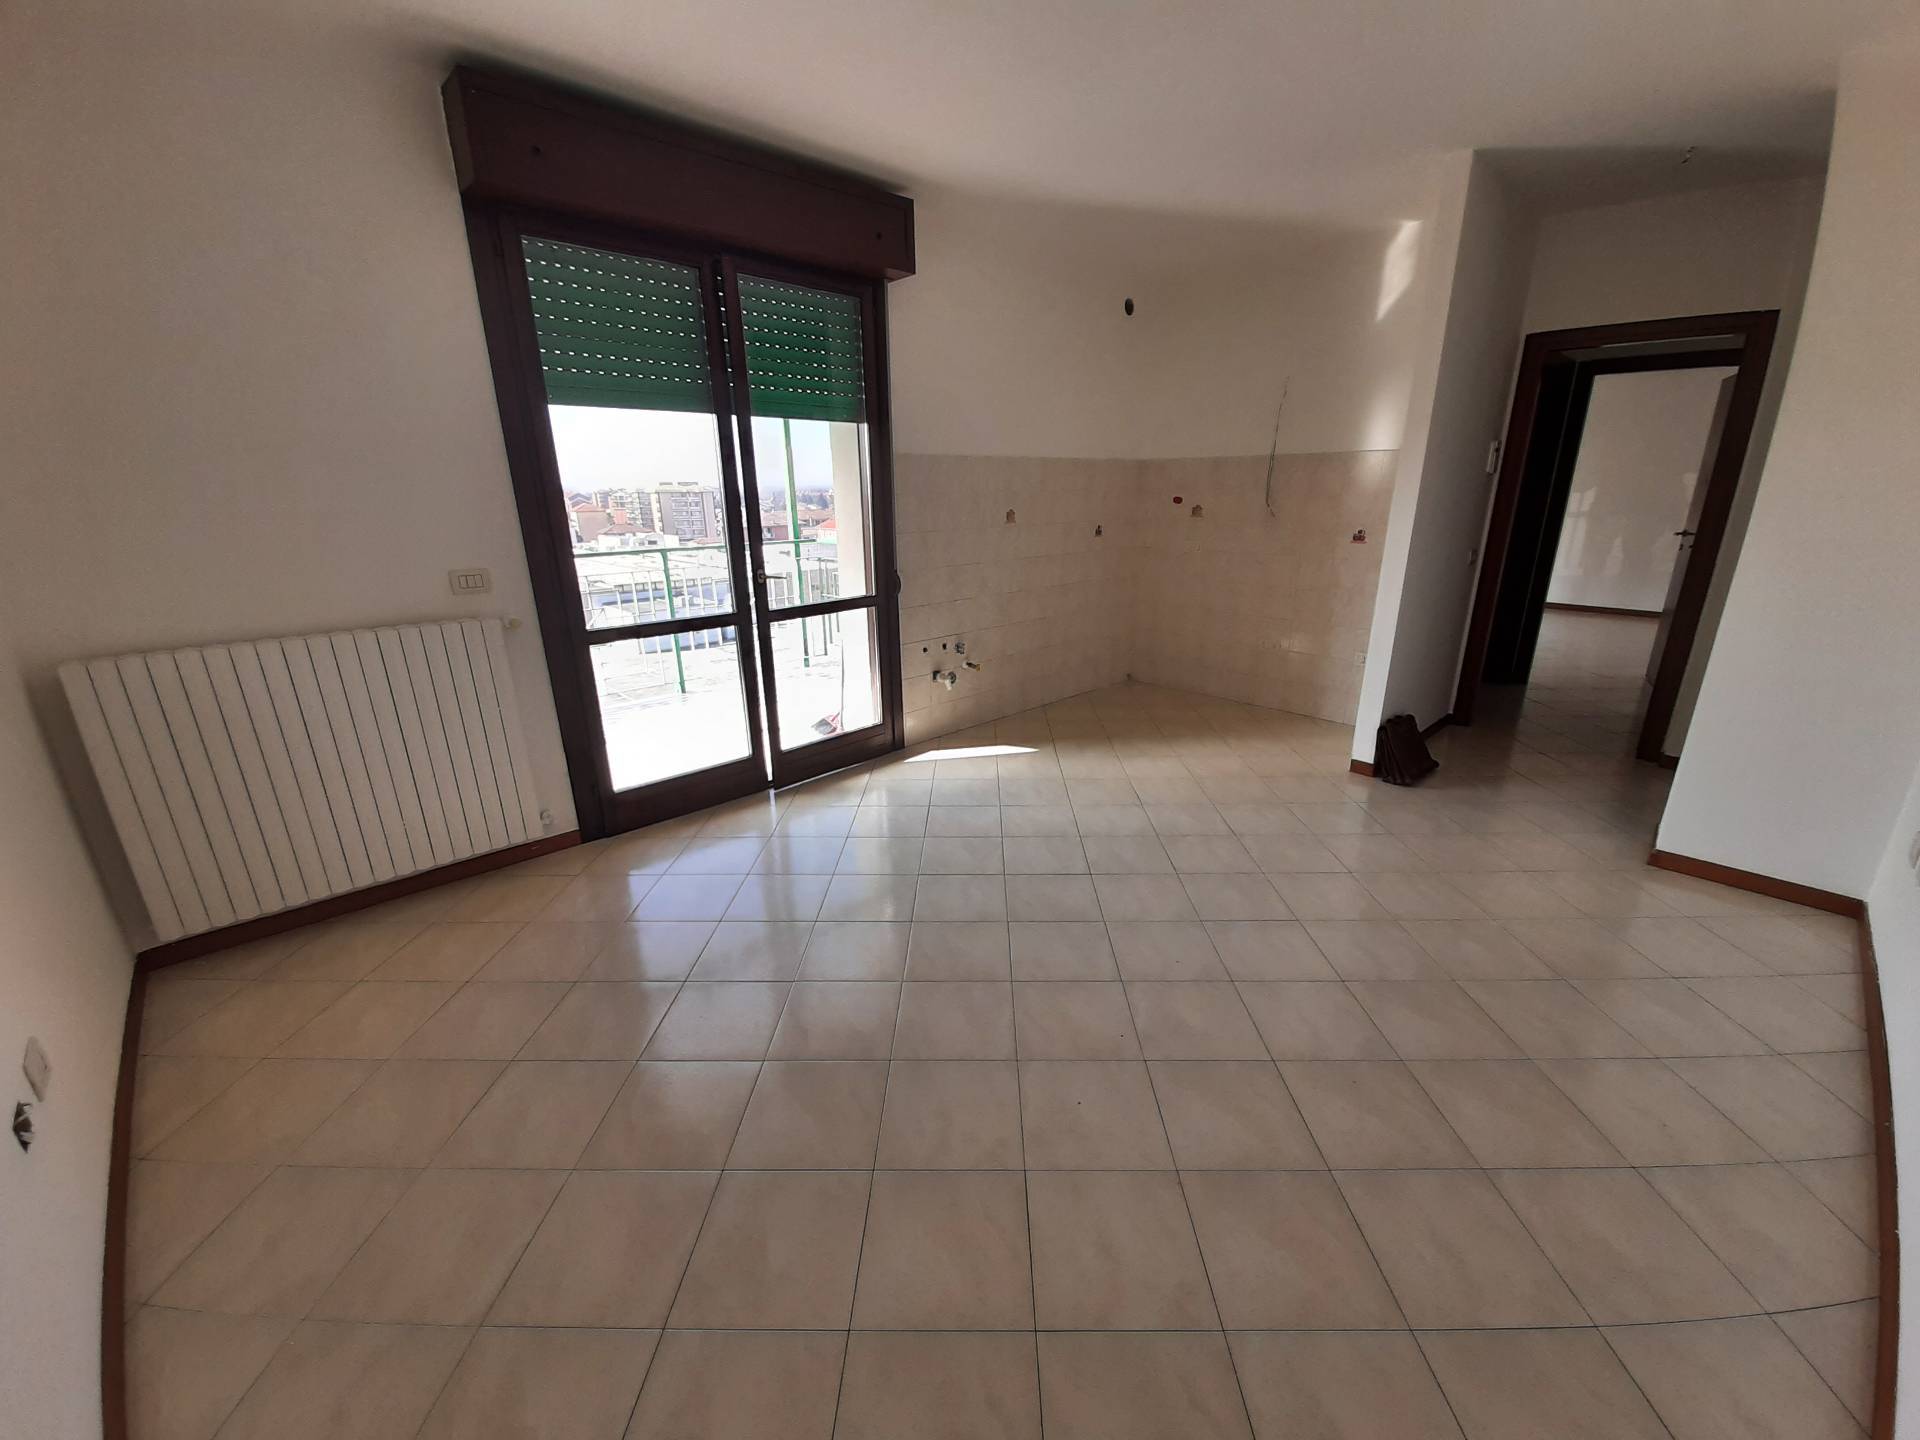 Appartamento in vendita a Alessandria, 2 locali, zona to, prezzo € 53.000 | PortaleAgenzieImmobiliari.it